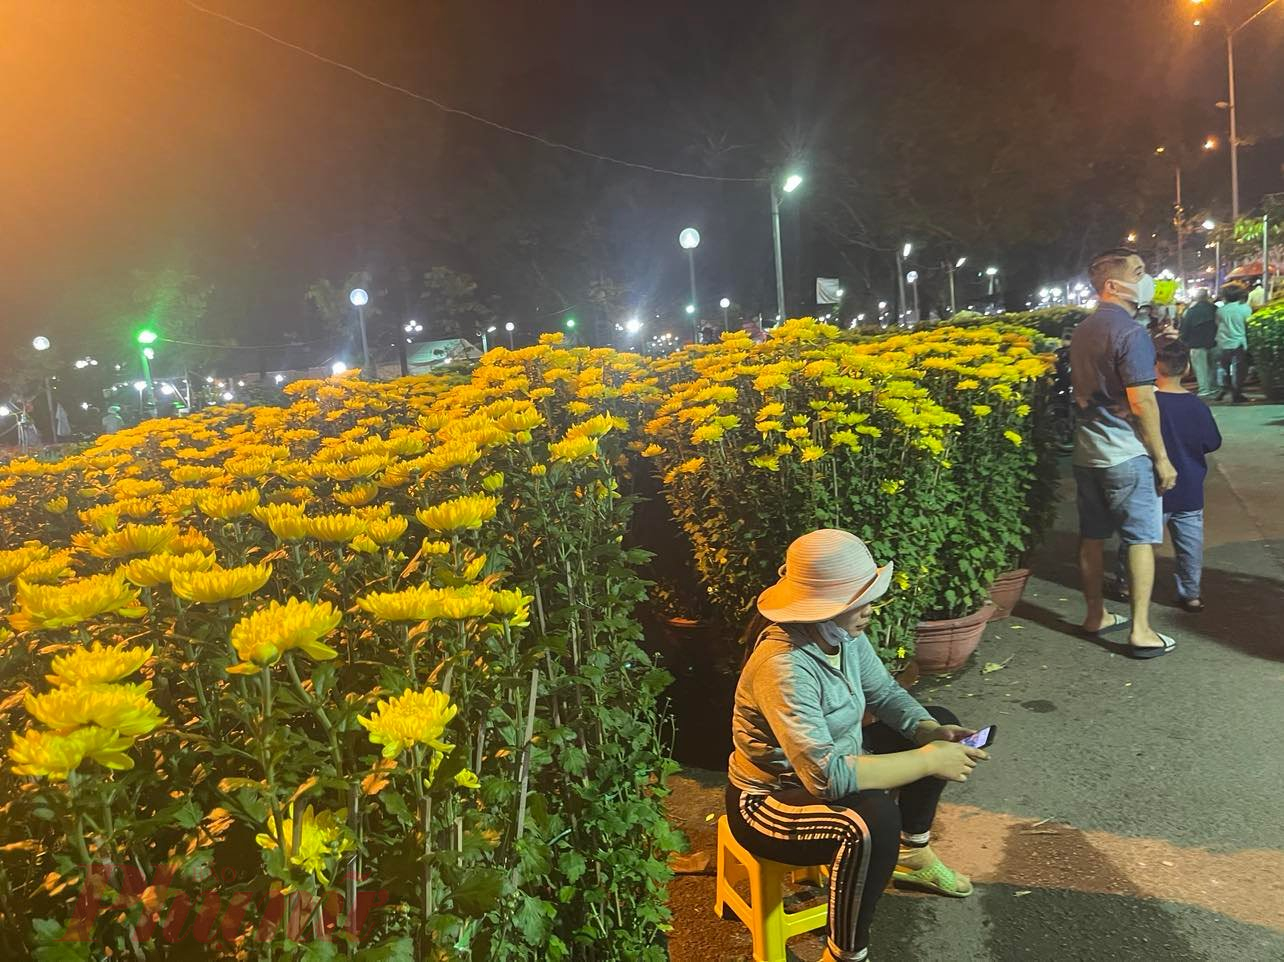 Chị Trang mời khách mua hoa nhưng phần lớn khách lướt qua, chị nói ngồi bấm điện thoại cho đỡ buồn - Ảnh: Nguyễn Cẩm